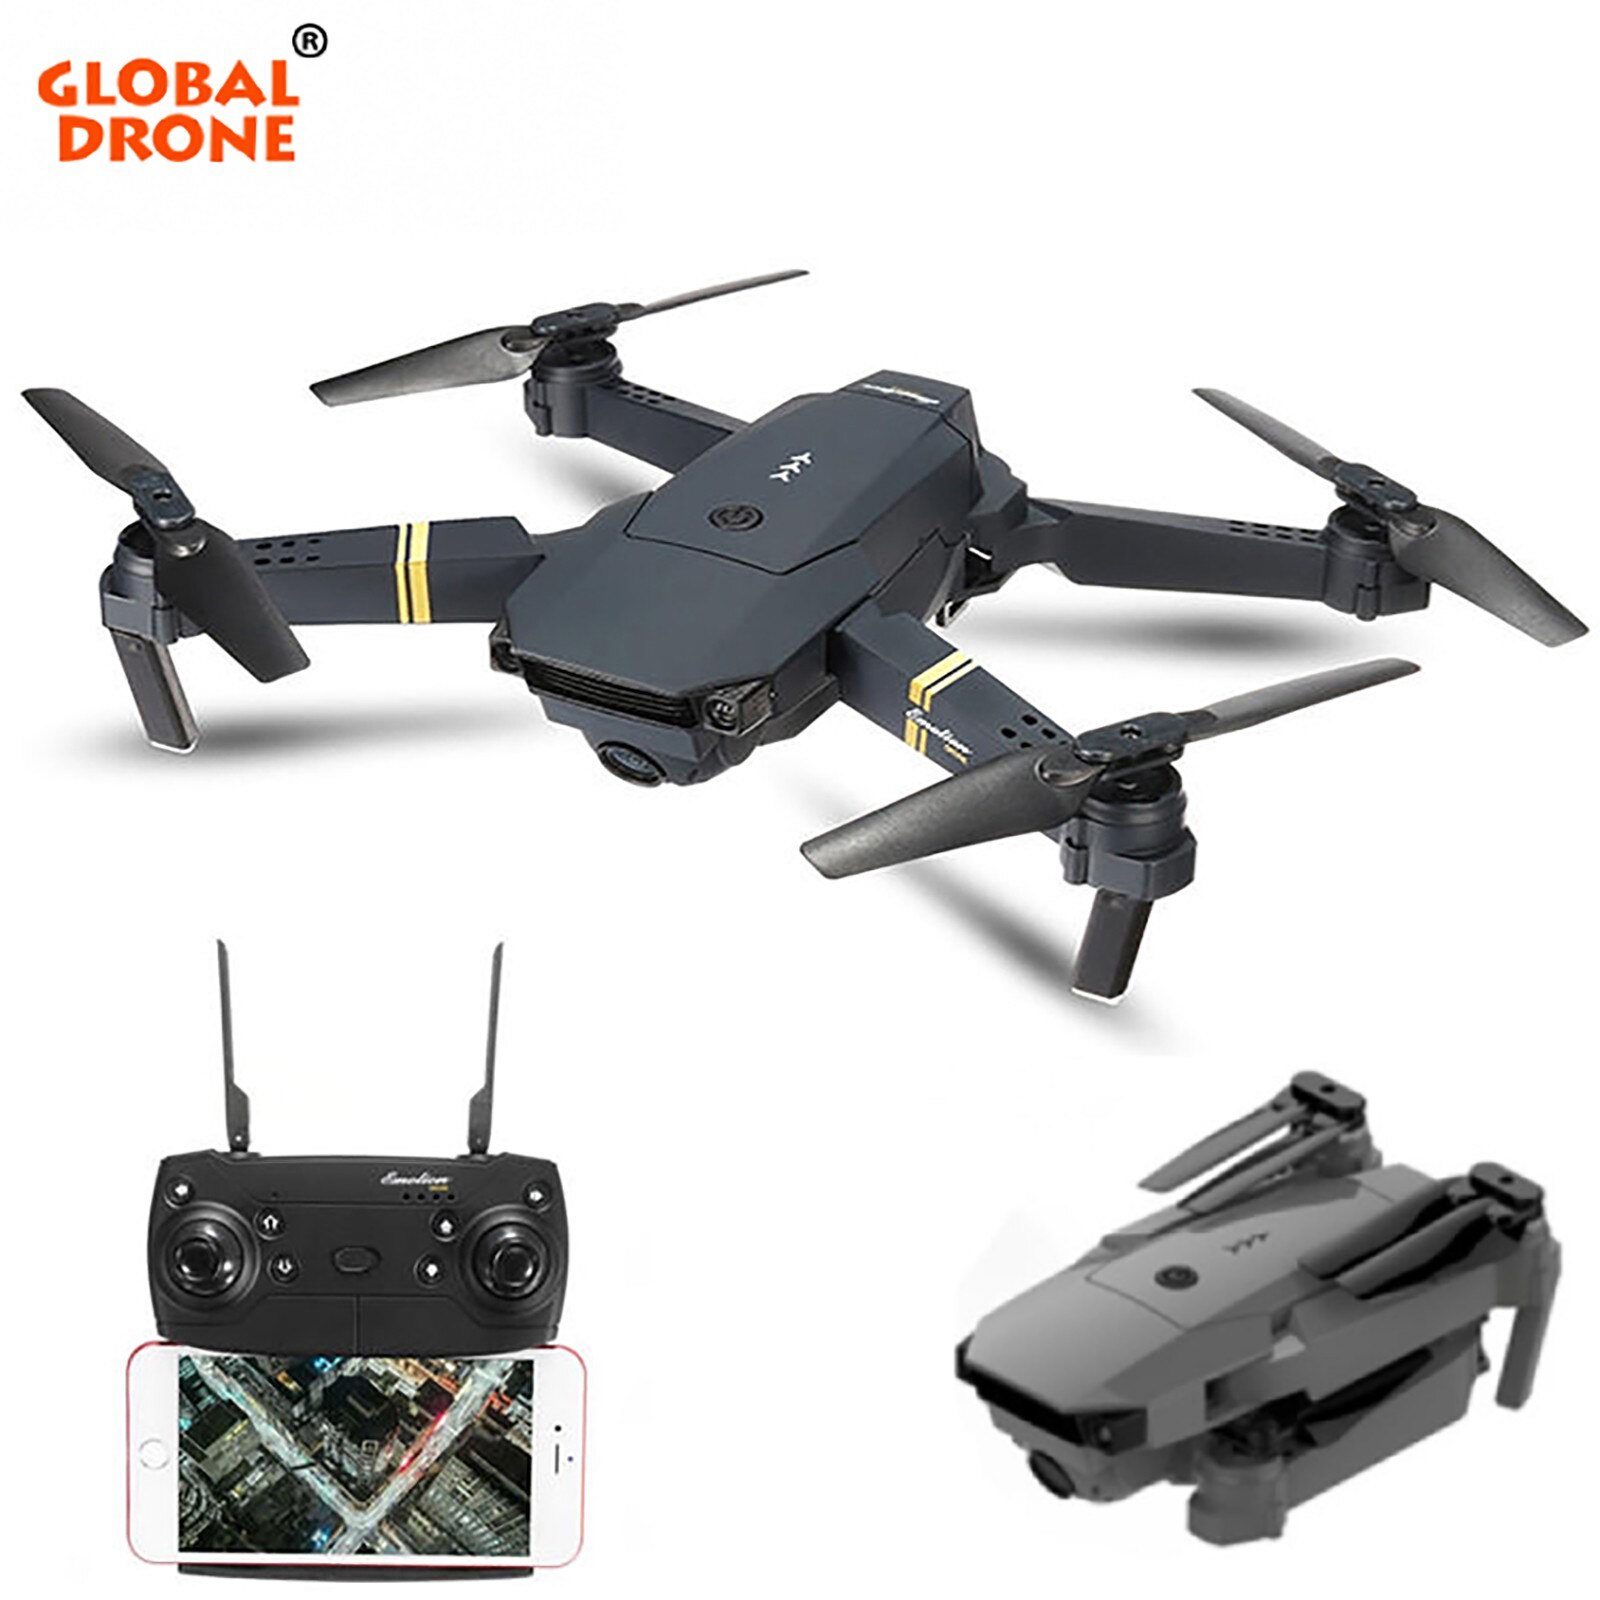 Afstandsbediening Drone GD88 Met Camera 4K Hd Groothoek Camera Wifi Fpv Drone Dual Camera quadcopter # G